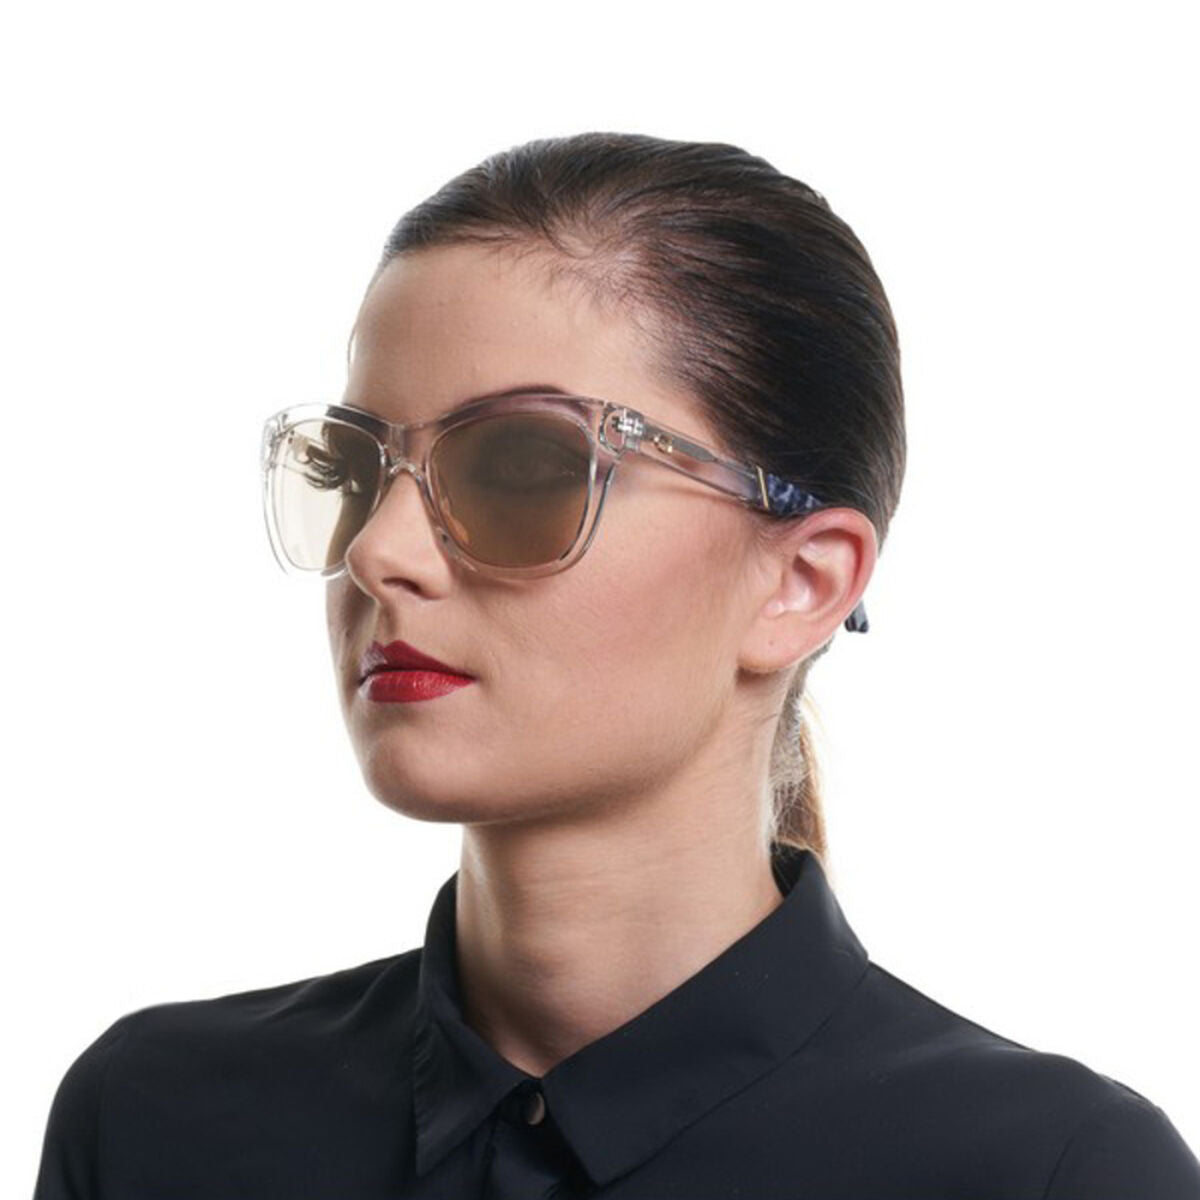 Kaufe Damensonnenbrille Guess GU7472 26G -56 -17 -140 bei AWK Flagship um € 54.00